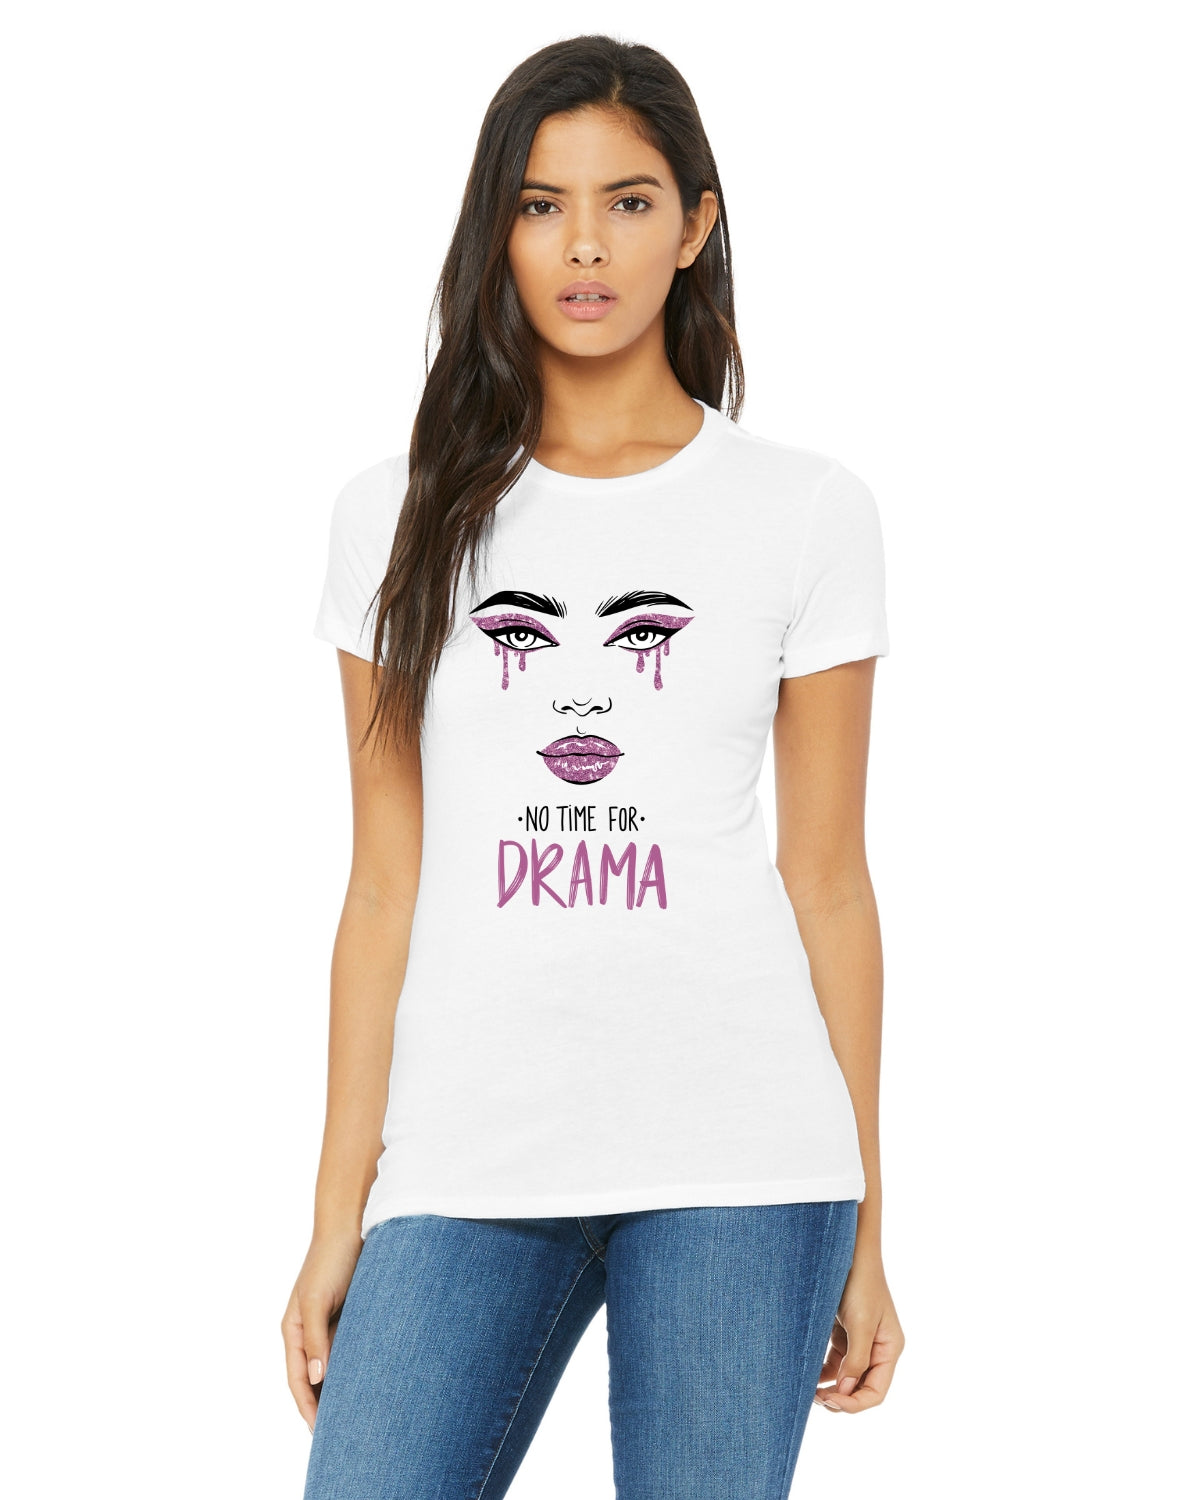 Drama-Free Zone Women's T-Shirt